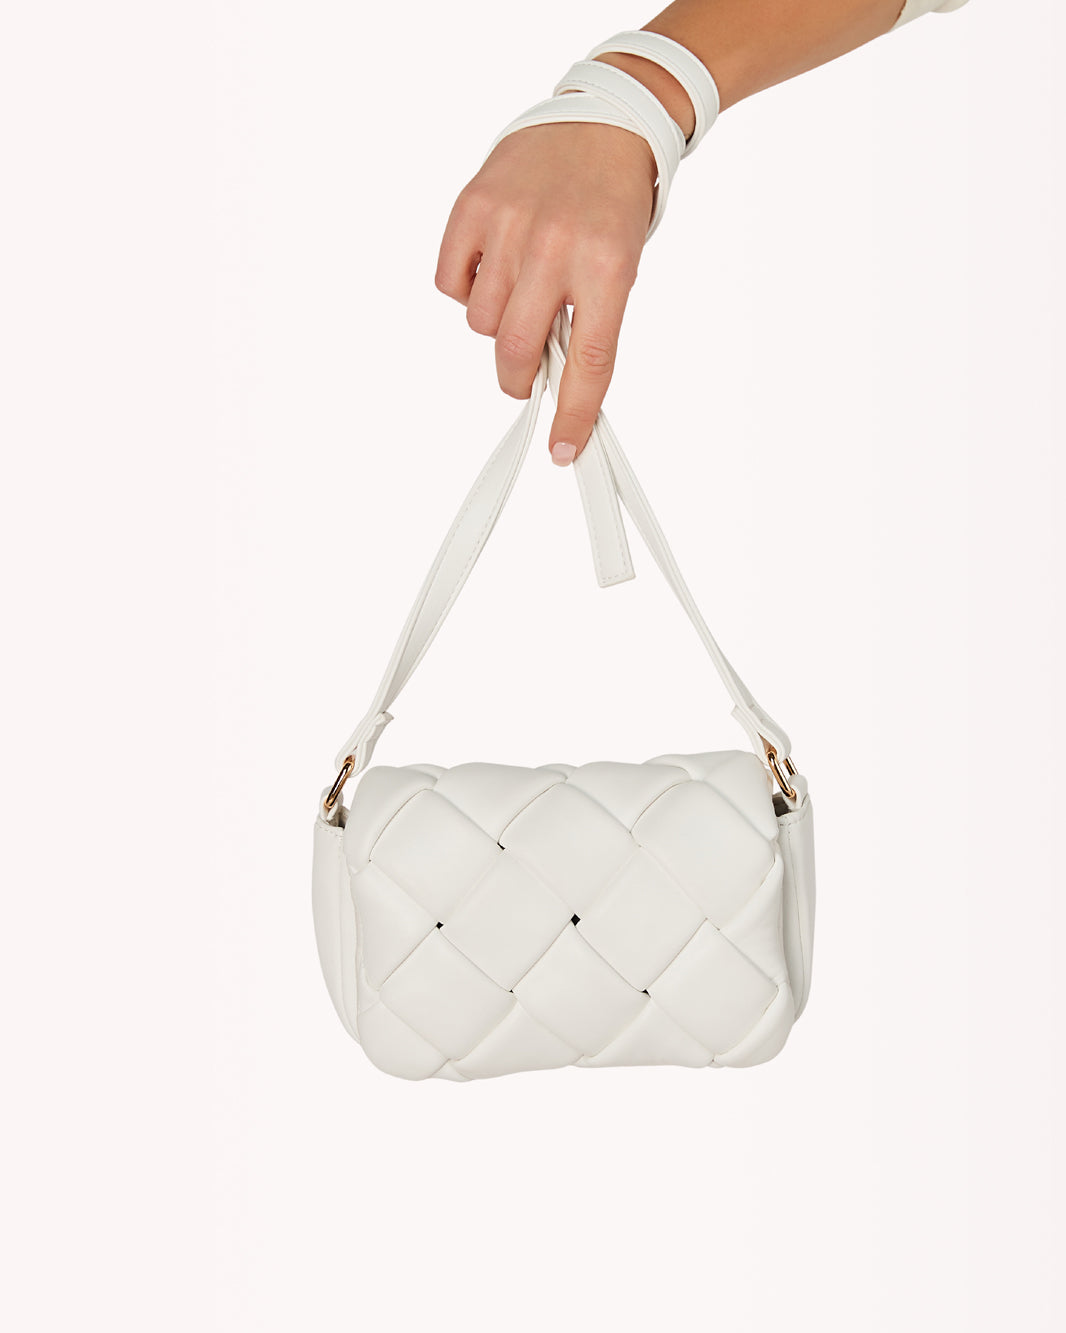 BARDOT CROSS BODY BAG - BONE-Handbags-Billini-O/S-Billini